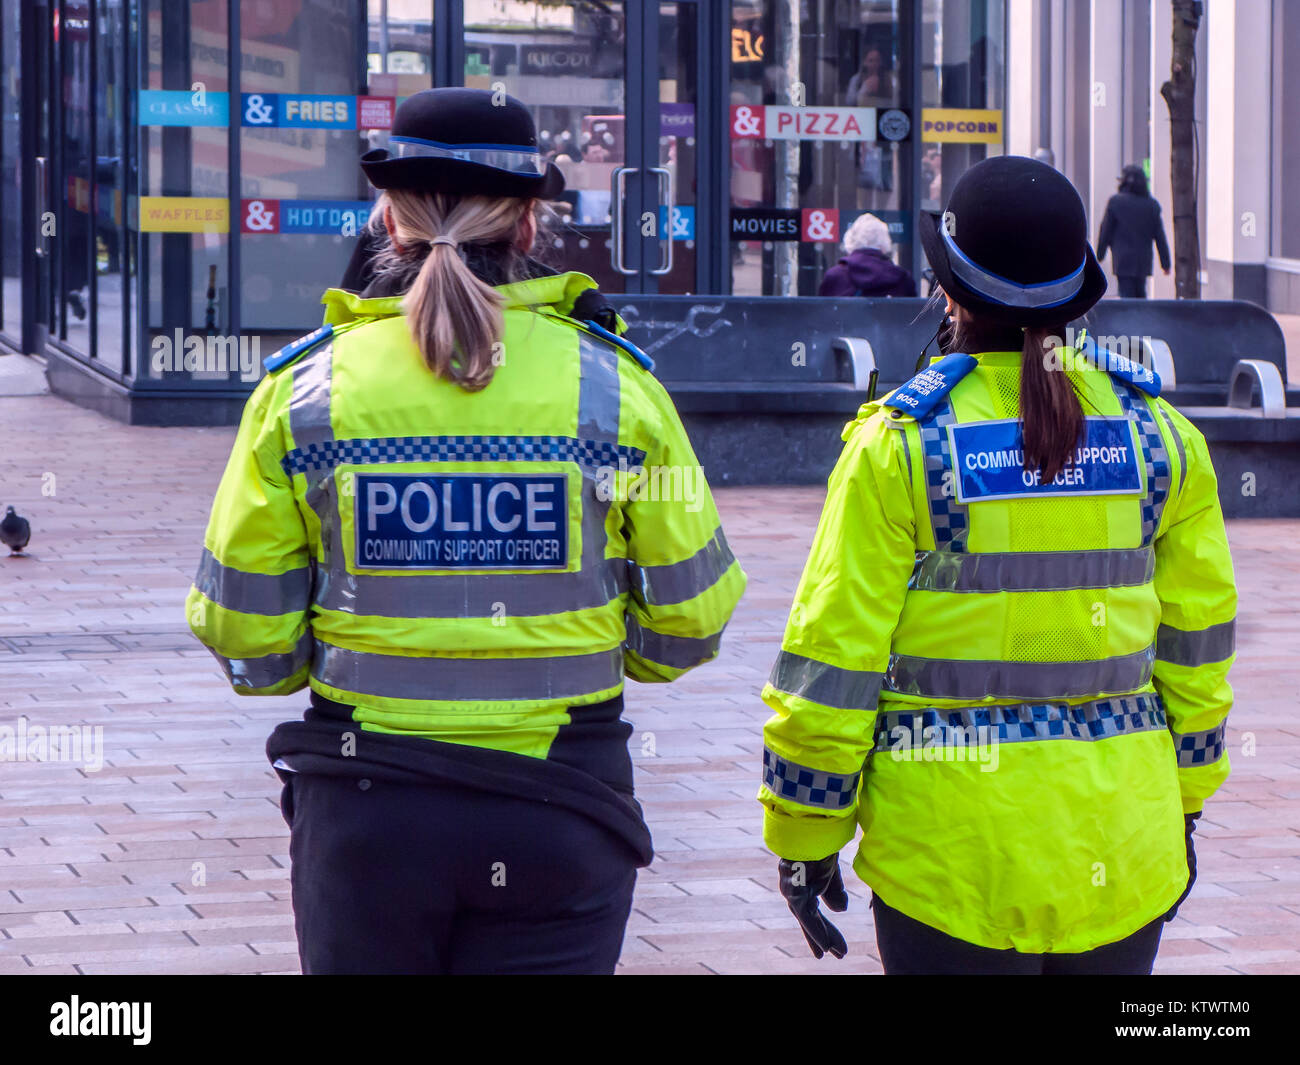 Weibliche Polizei Unterstützung der Gemeinschaft Offiziere patrouillieren Sheffield City Centre Stockfoto